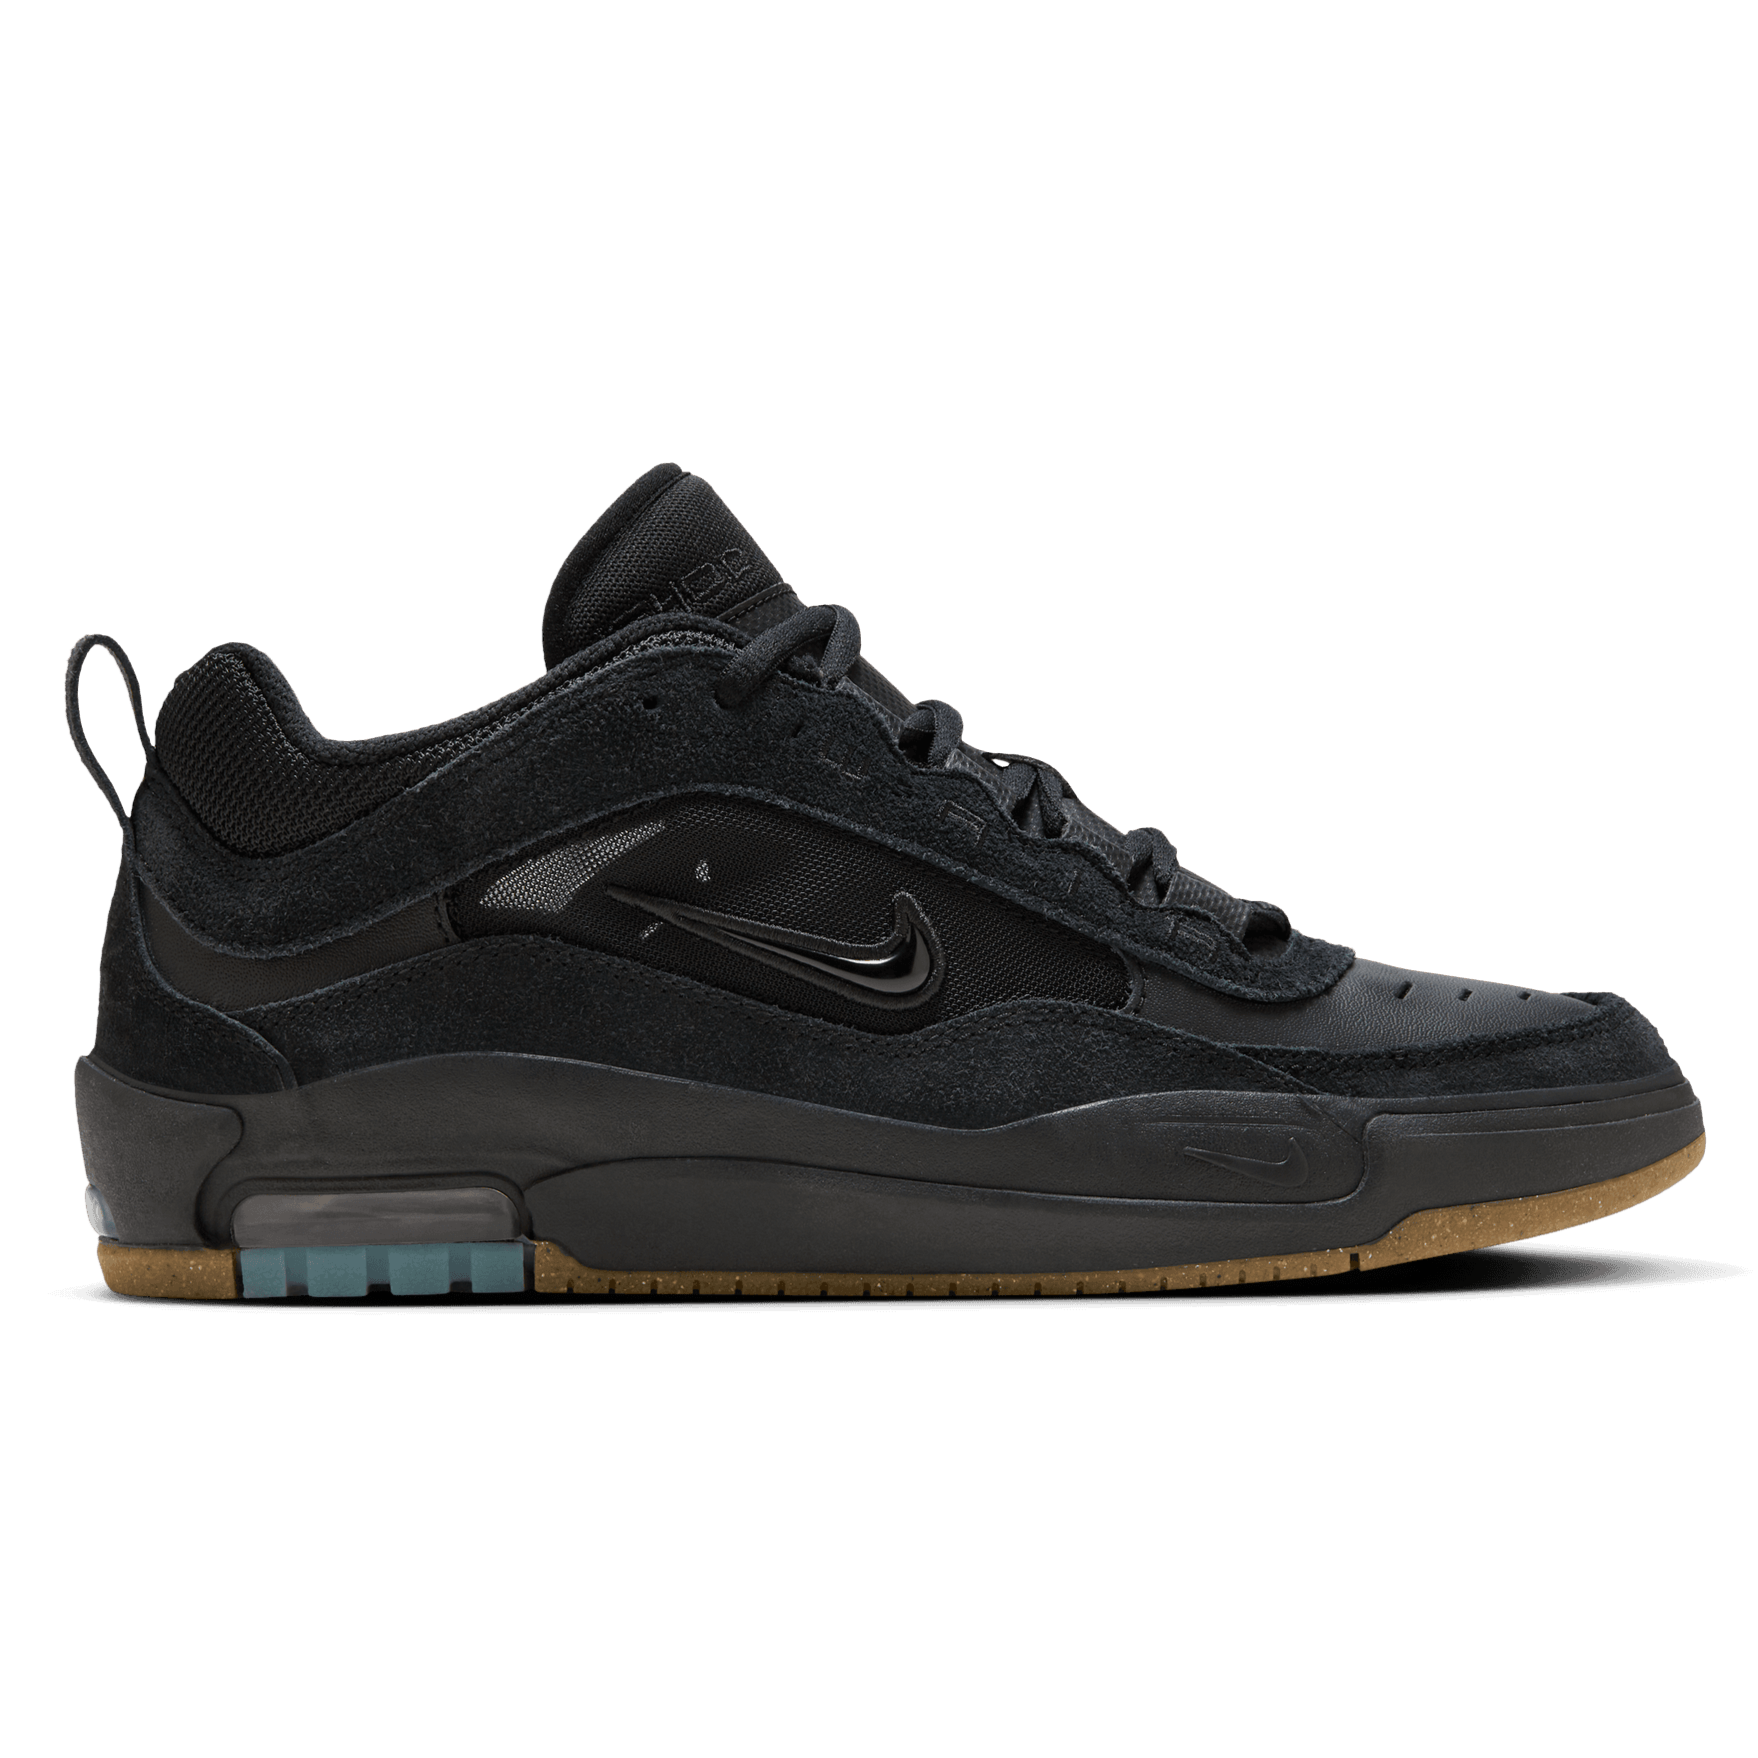 Black/Black Ishod Wair Max 2 Nike SB Shoe